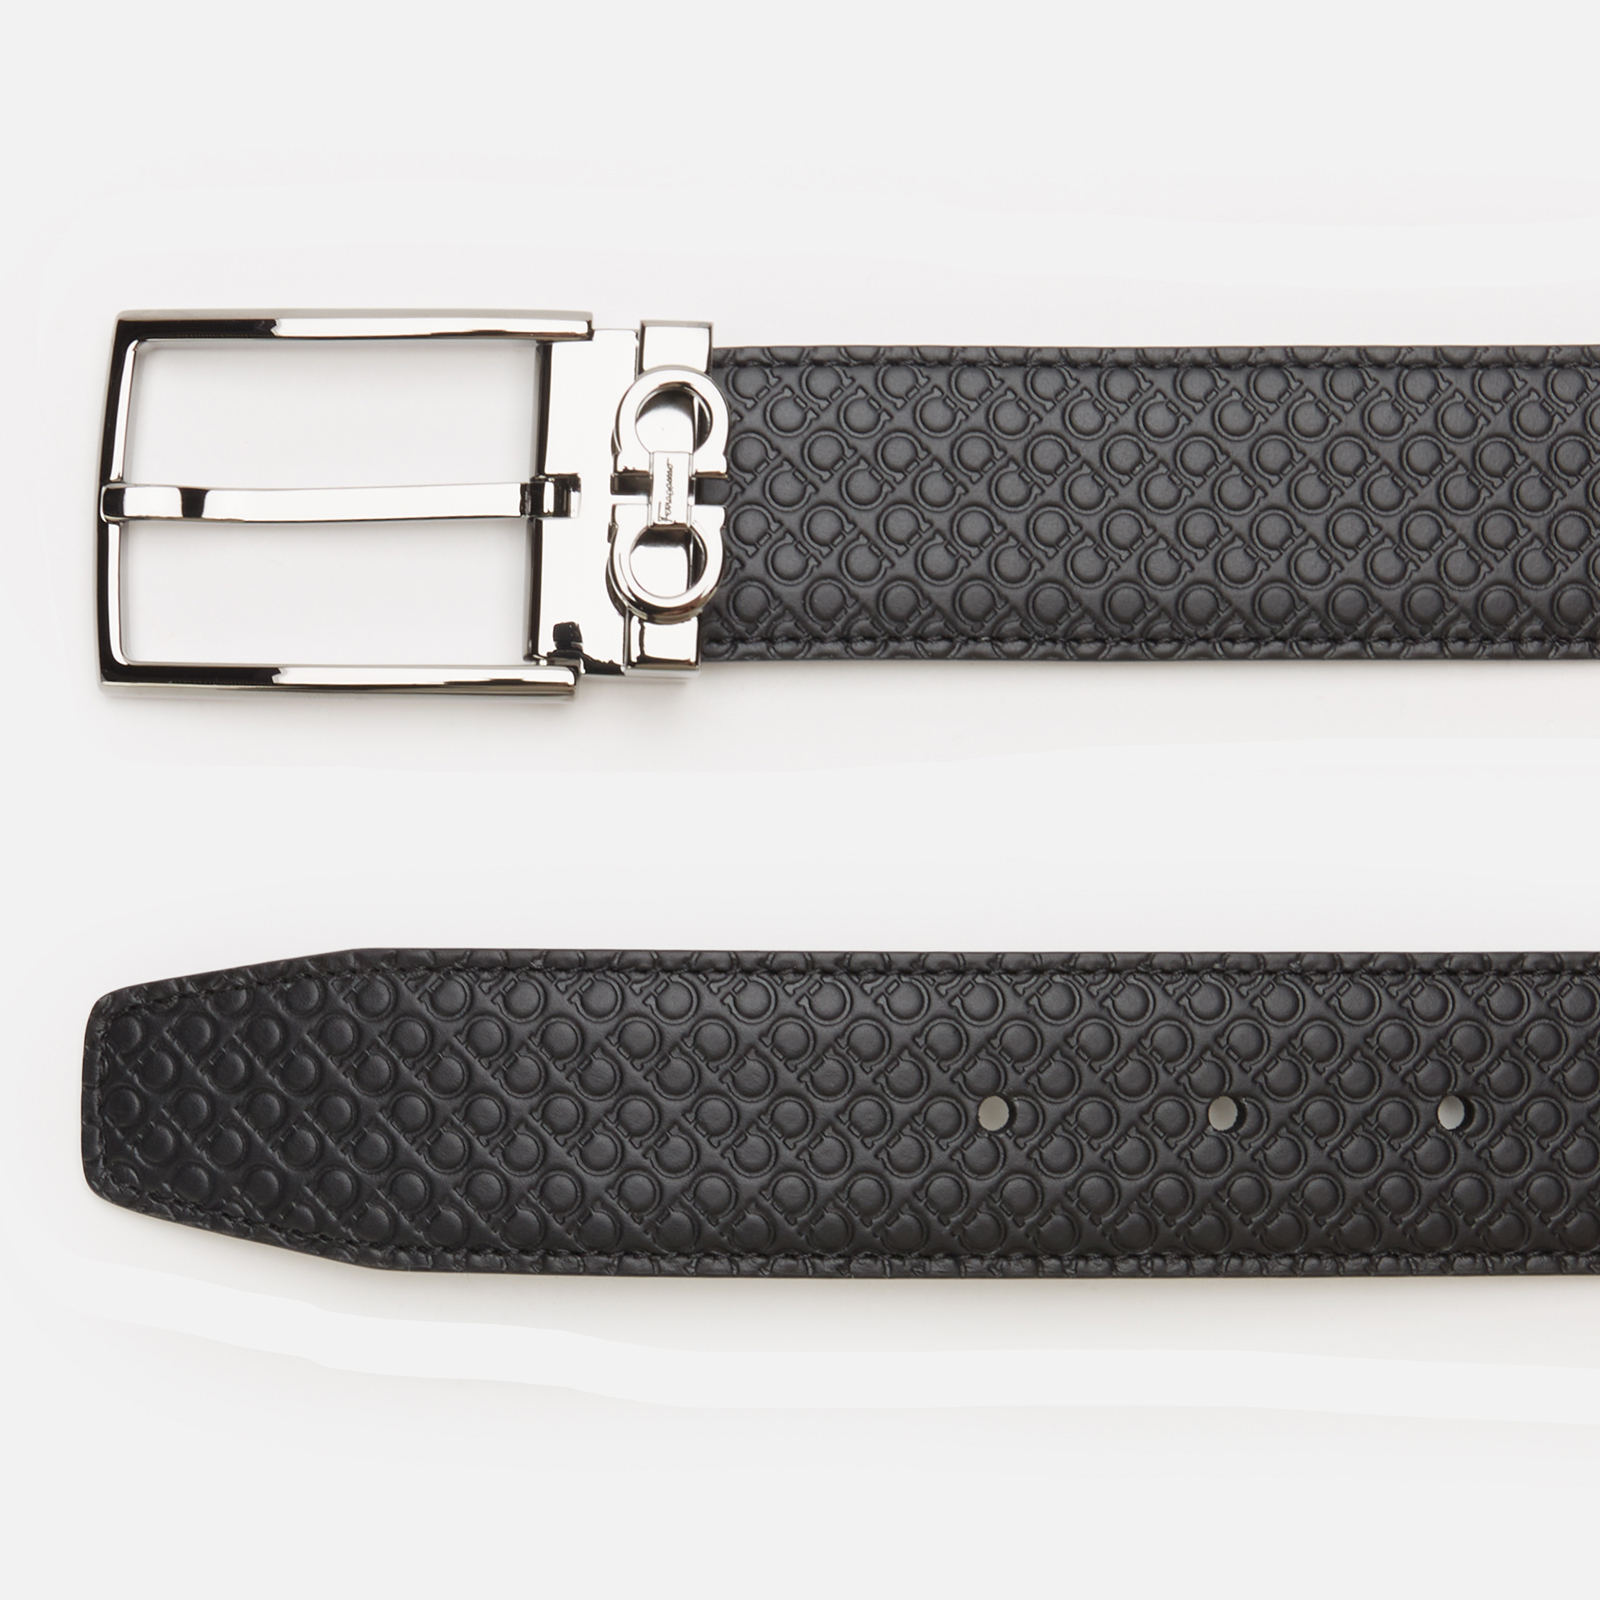 Adjustable Gancini belt, Belts, Men's